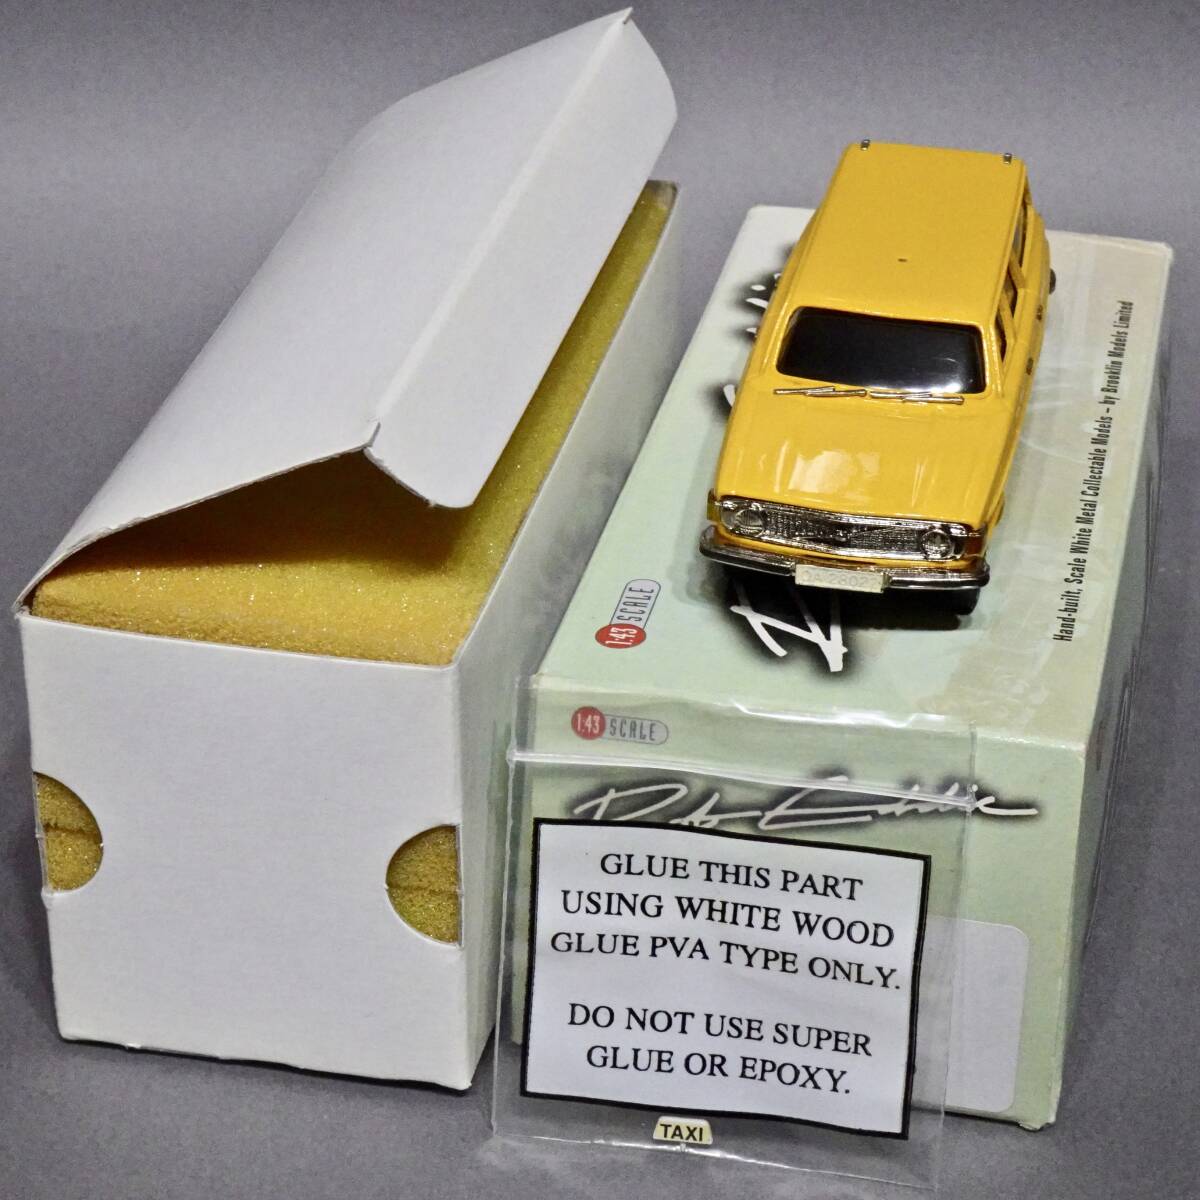 [ロベティモデル]ボルボ145タクシー1973年/ホワイトメタル製(1/43)ブルックリンモデル